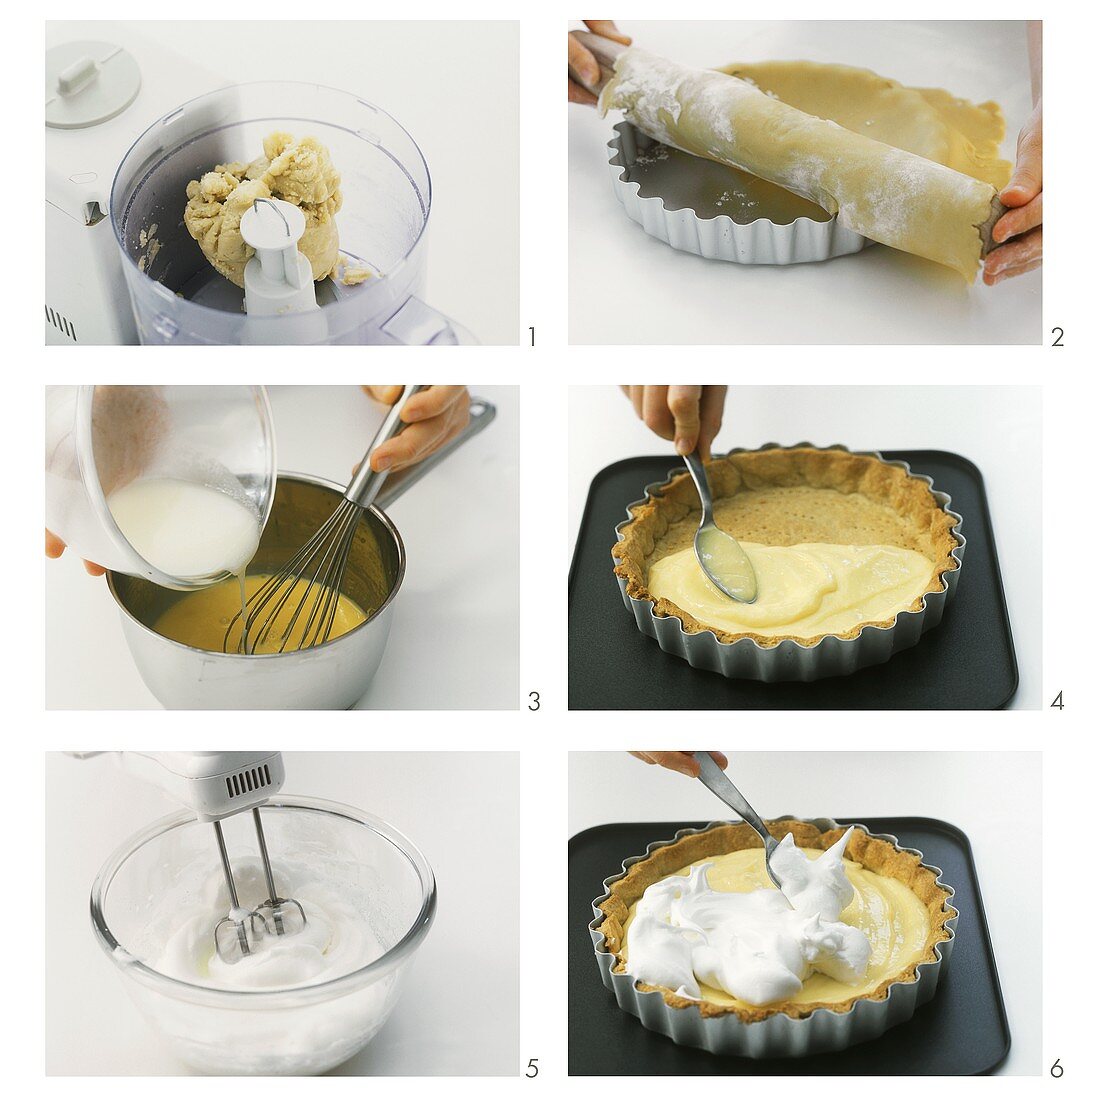 Making lemon meringue tart